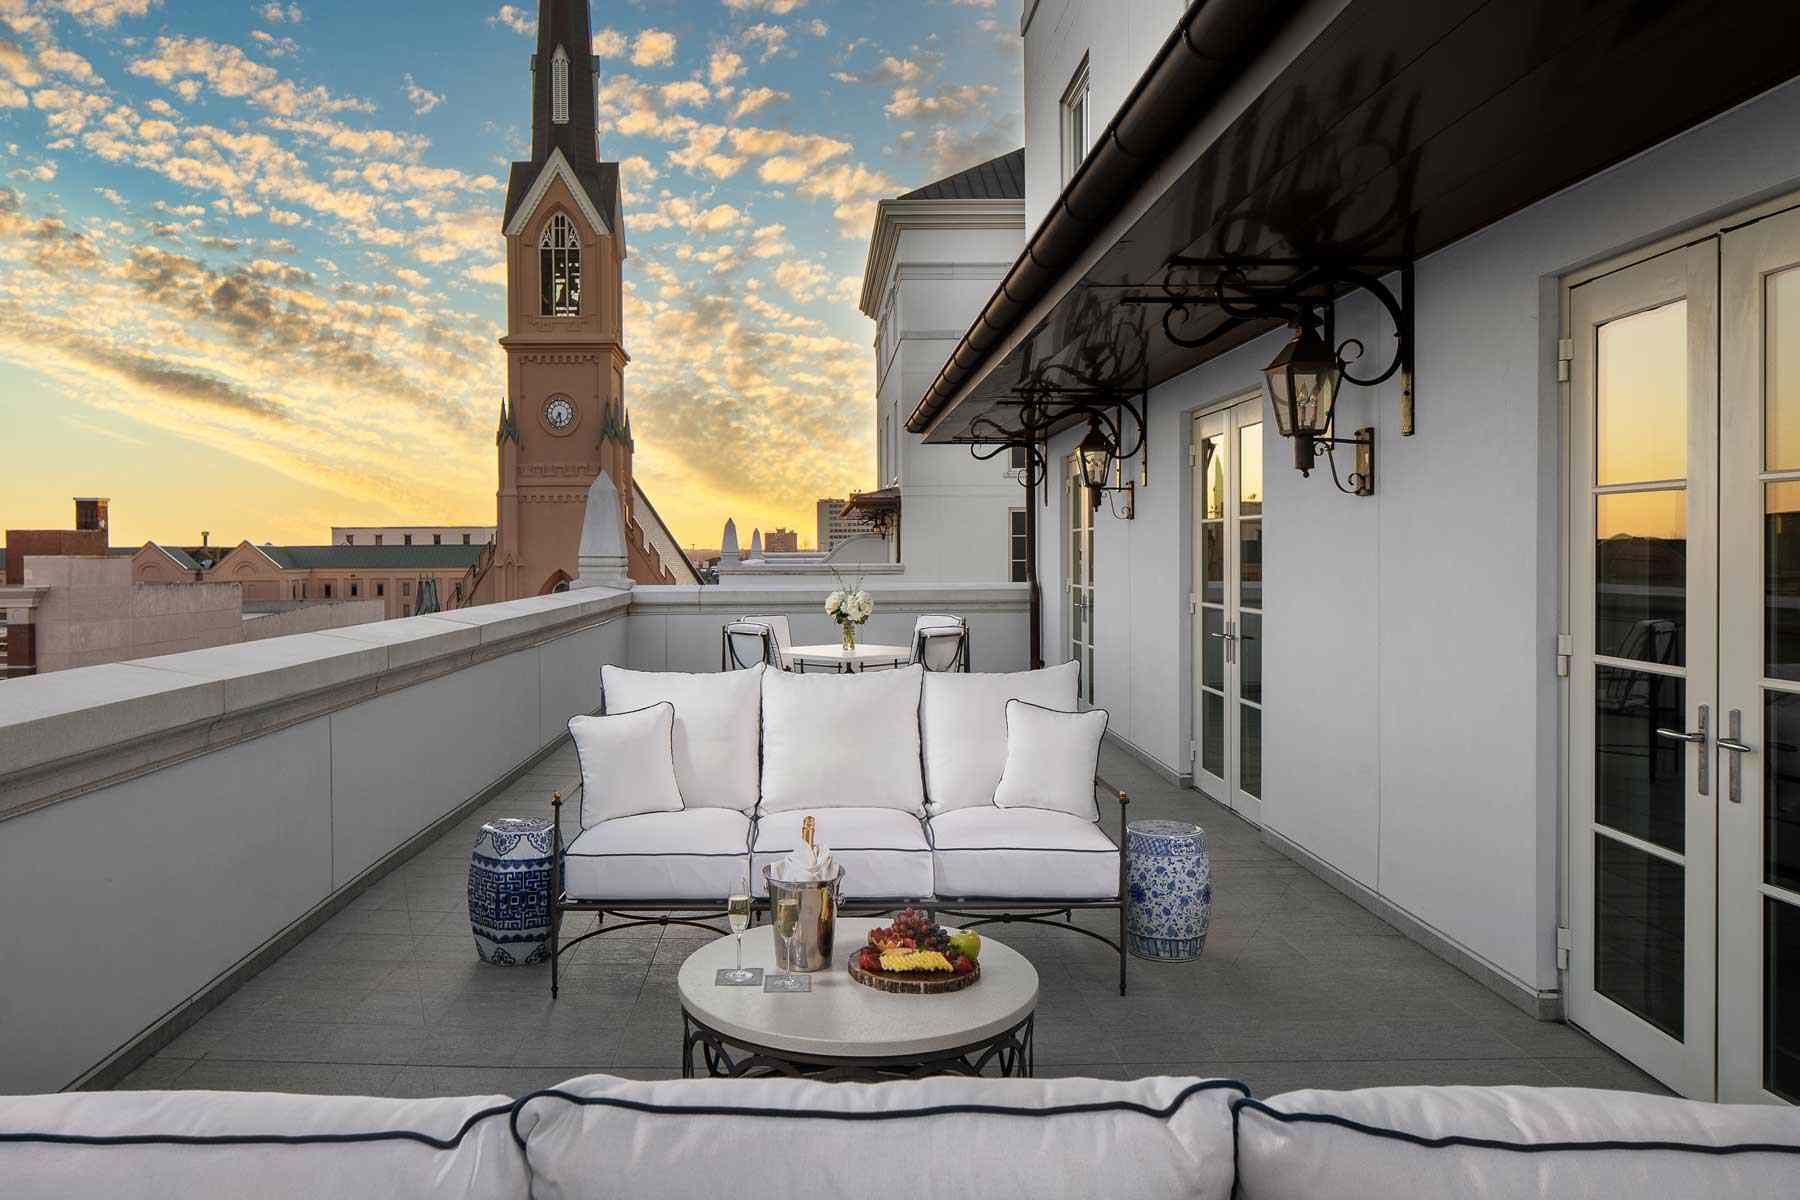 Image de la terrasse de l'hôtel Bennett au coucher du soleil